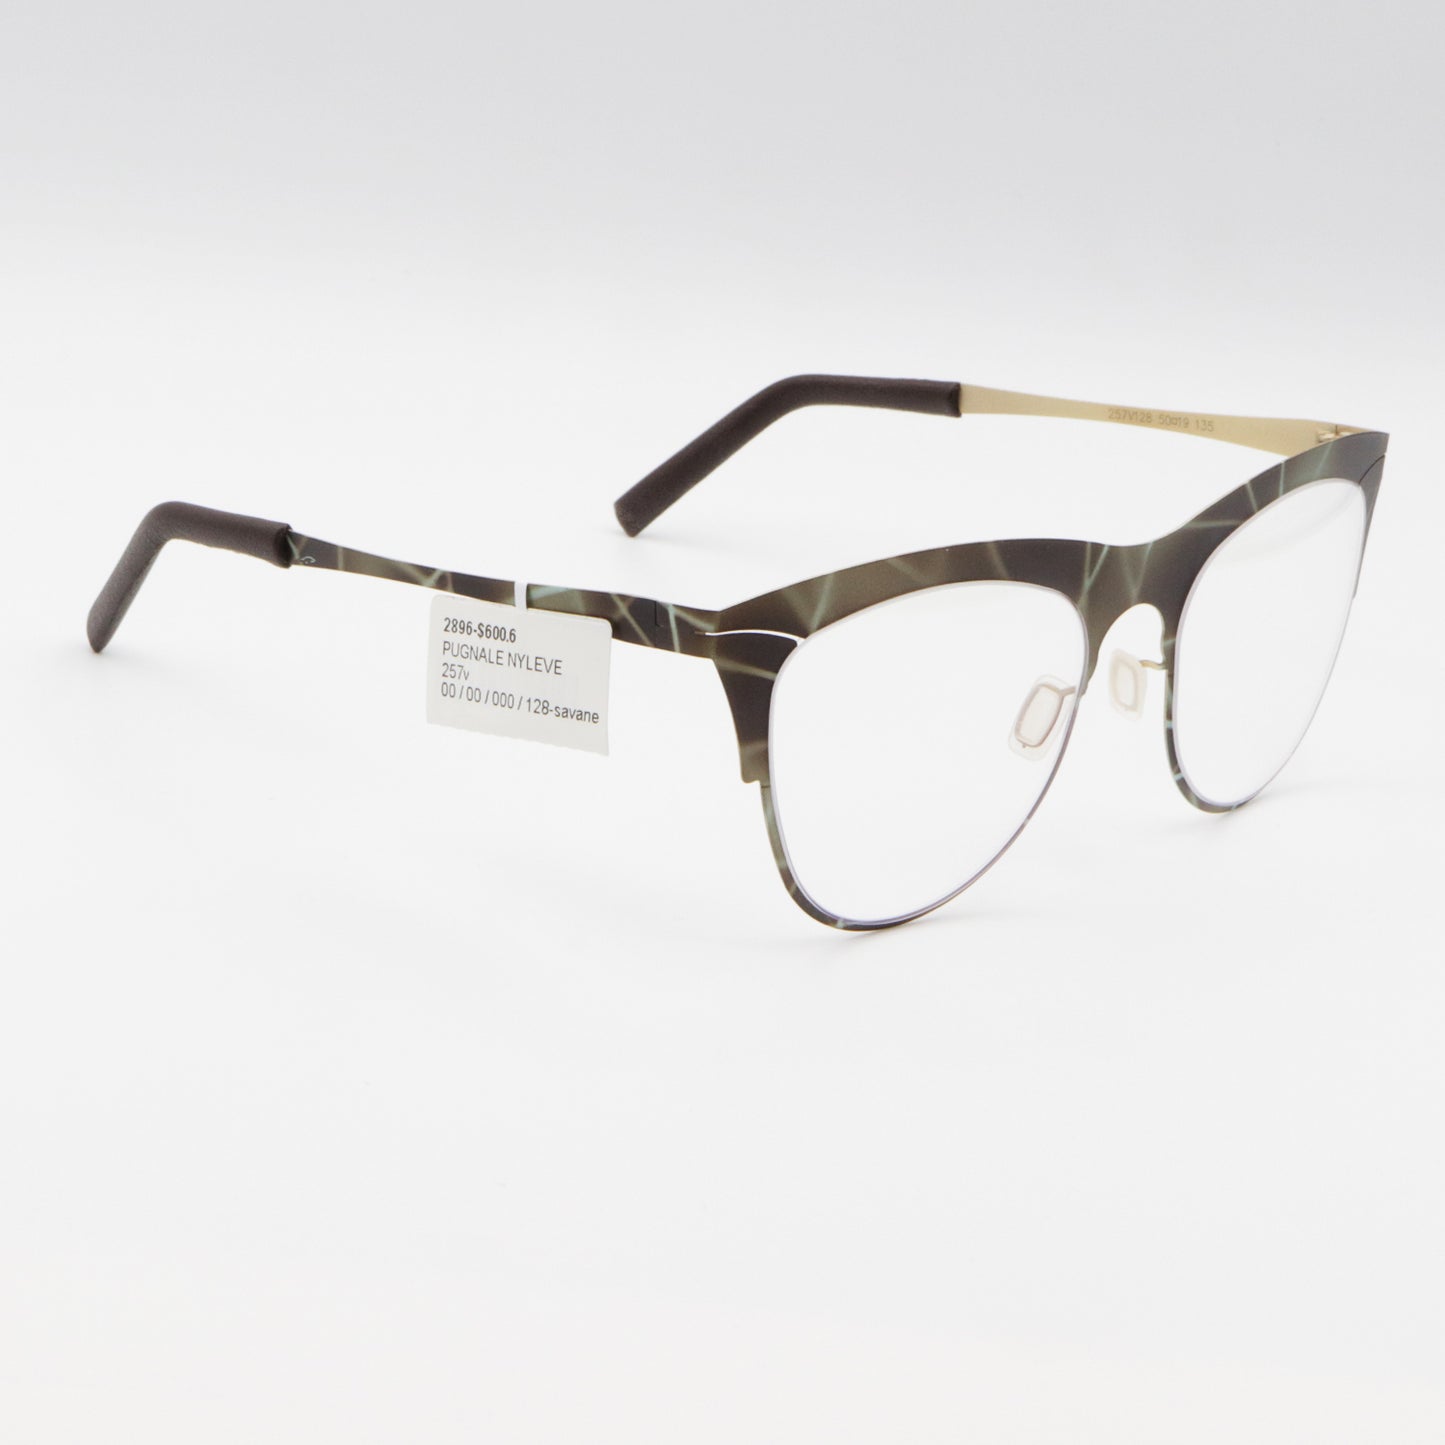 257v Pugnale & Nyleve Unisex Eyeglasses